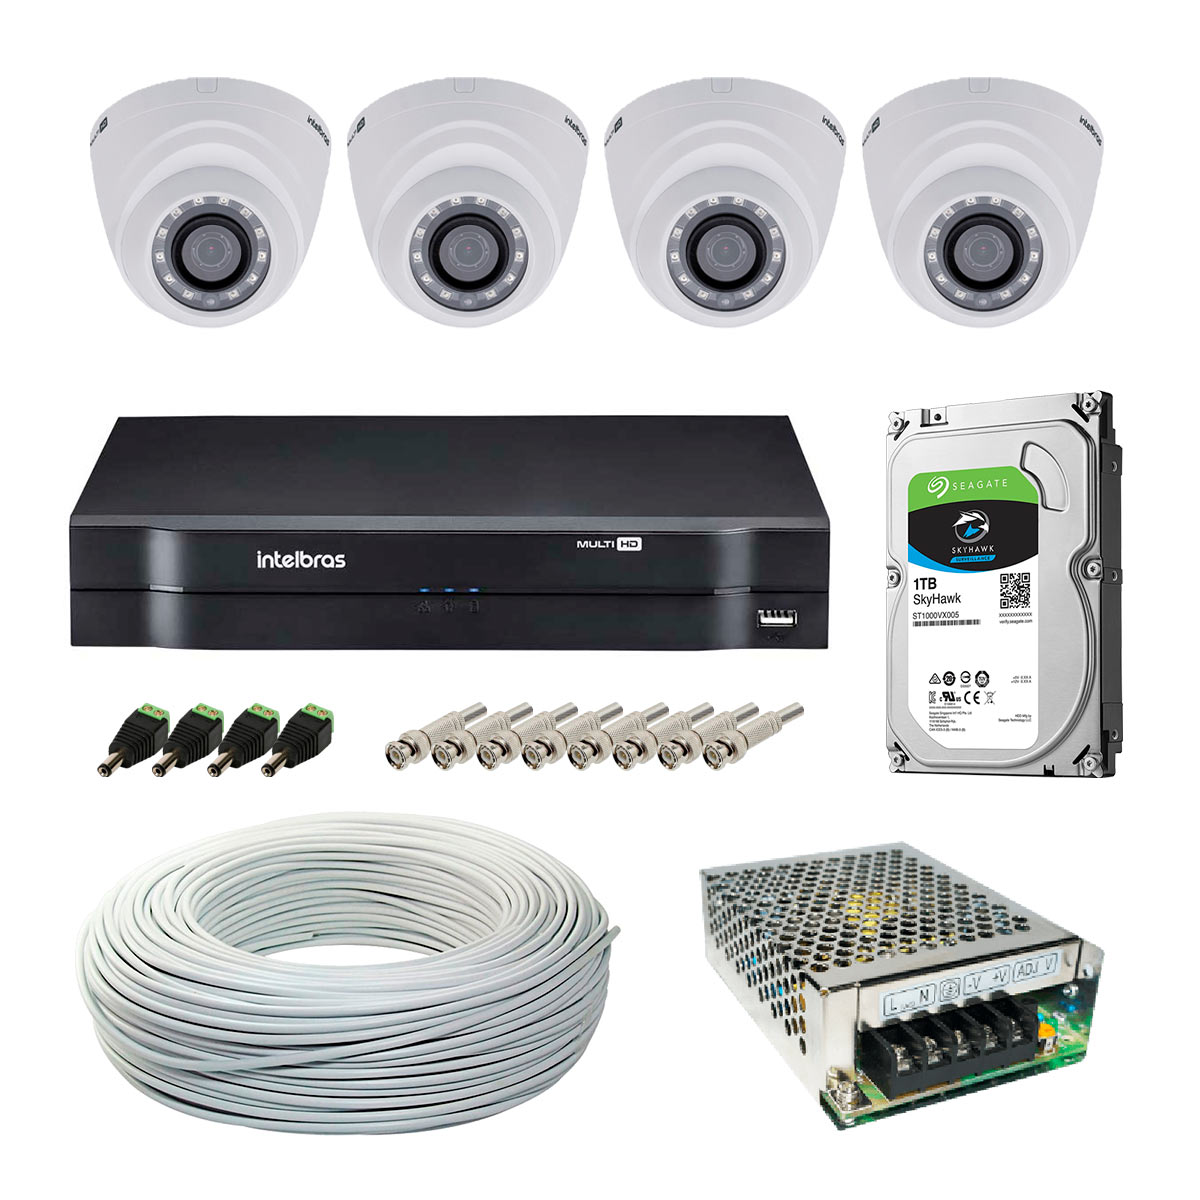 Kit CFTV Intelbras - DVR 8 Canais MHDX 1108, 4 Câmeras Dome VHD 1010 D G4, HD 1TB, Fonte Chaveada, Cabo Coaxial 100 metros, 4 Plugs P4 Macho + 8 Conectores BNC Macho